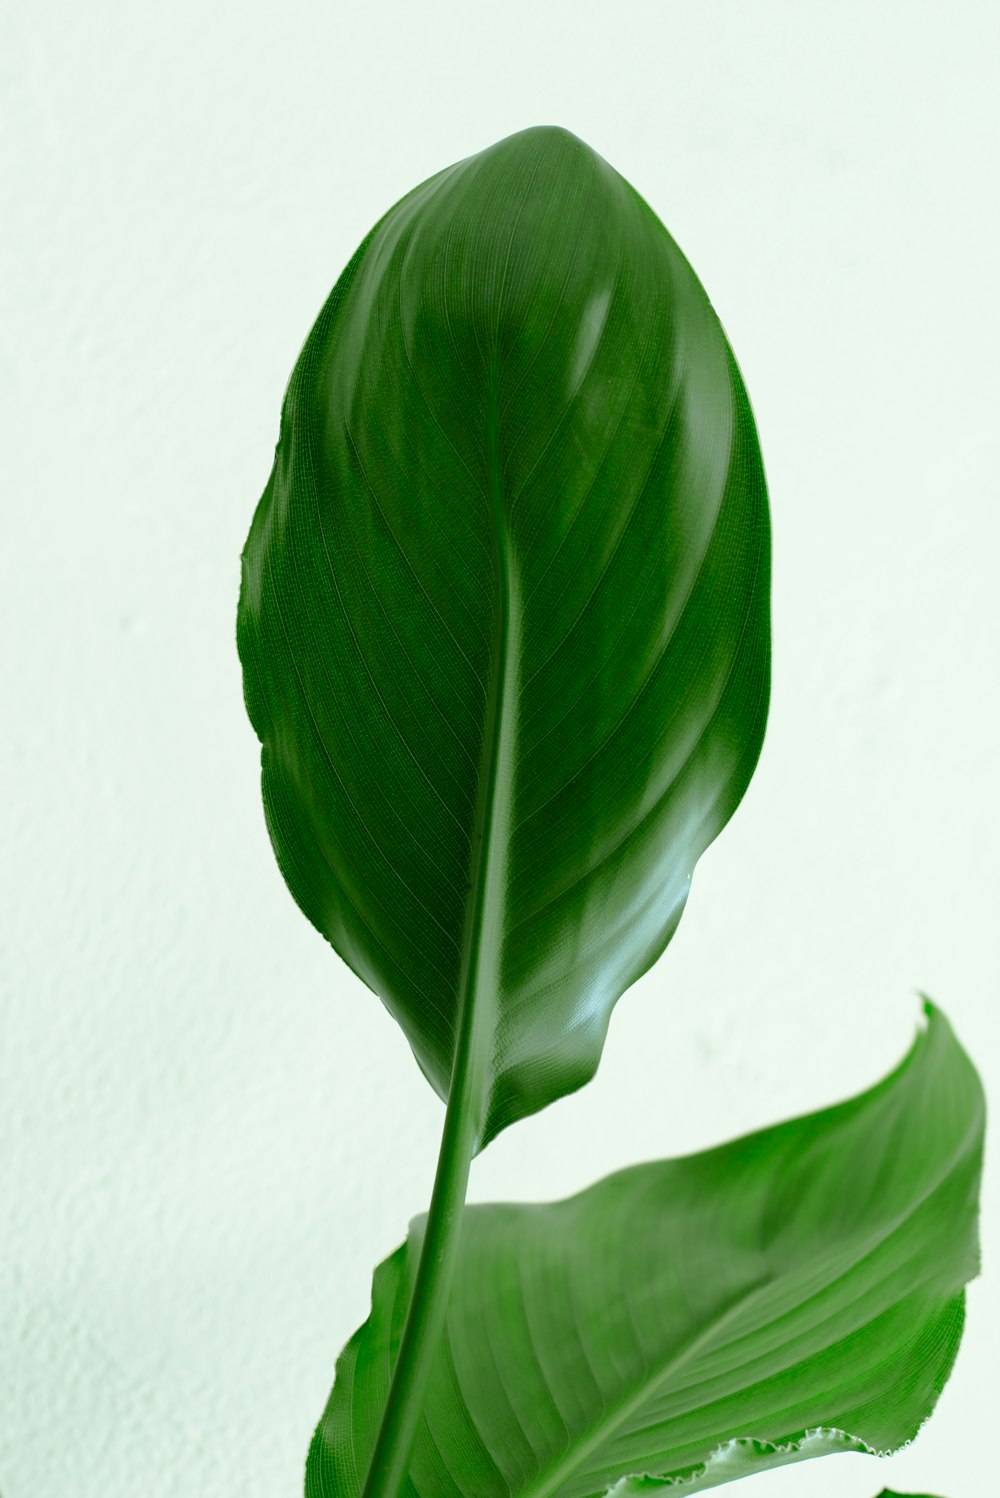 planta da folha verde perto da parede branca